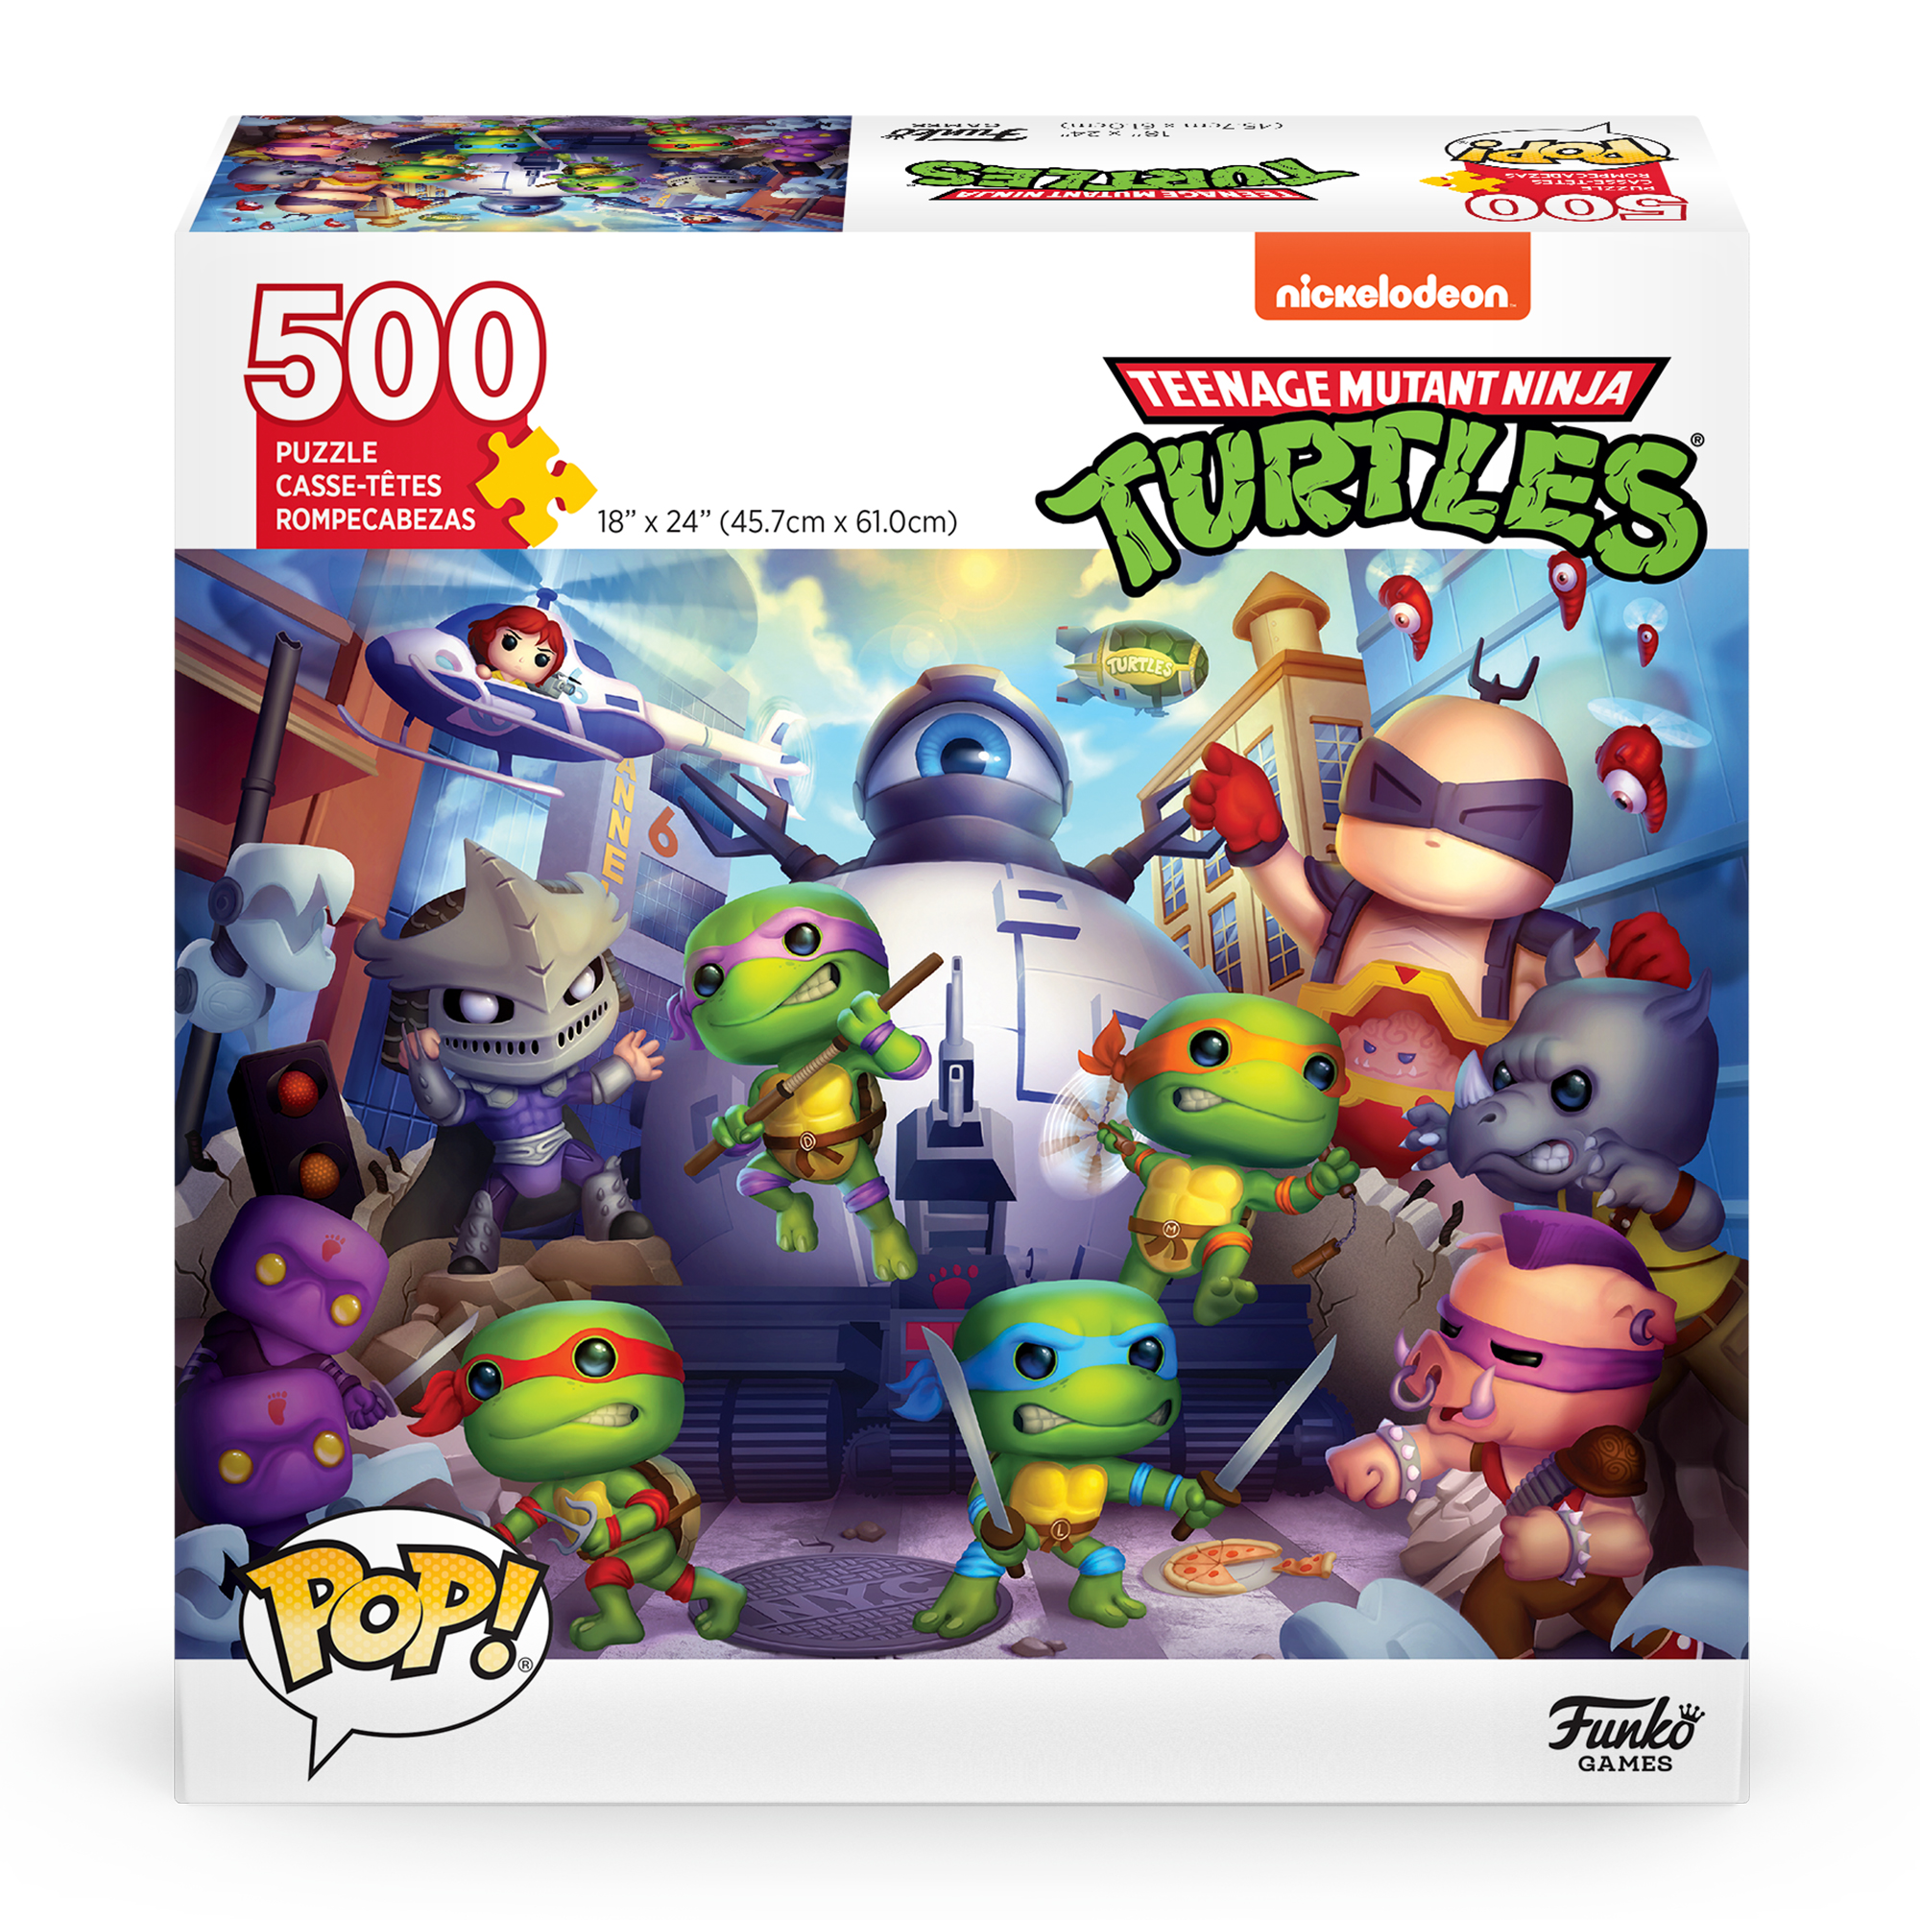 Funko Pop! Puzzles - Teenage Mutant Ninja Turtles